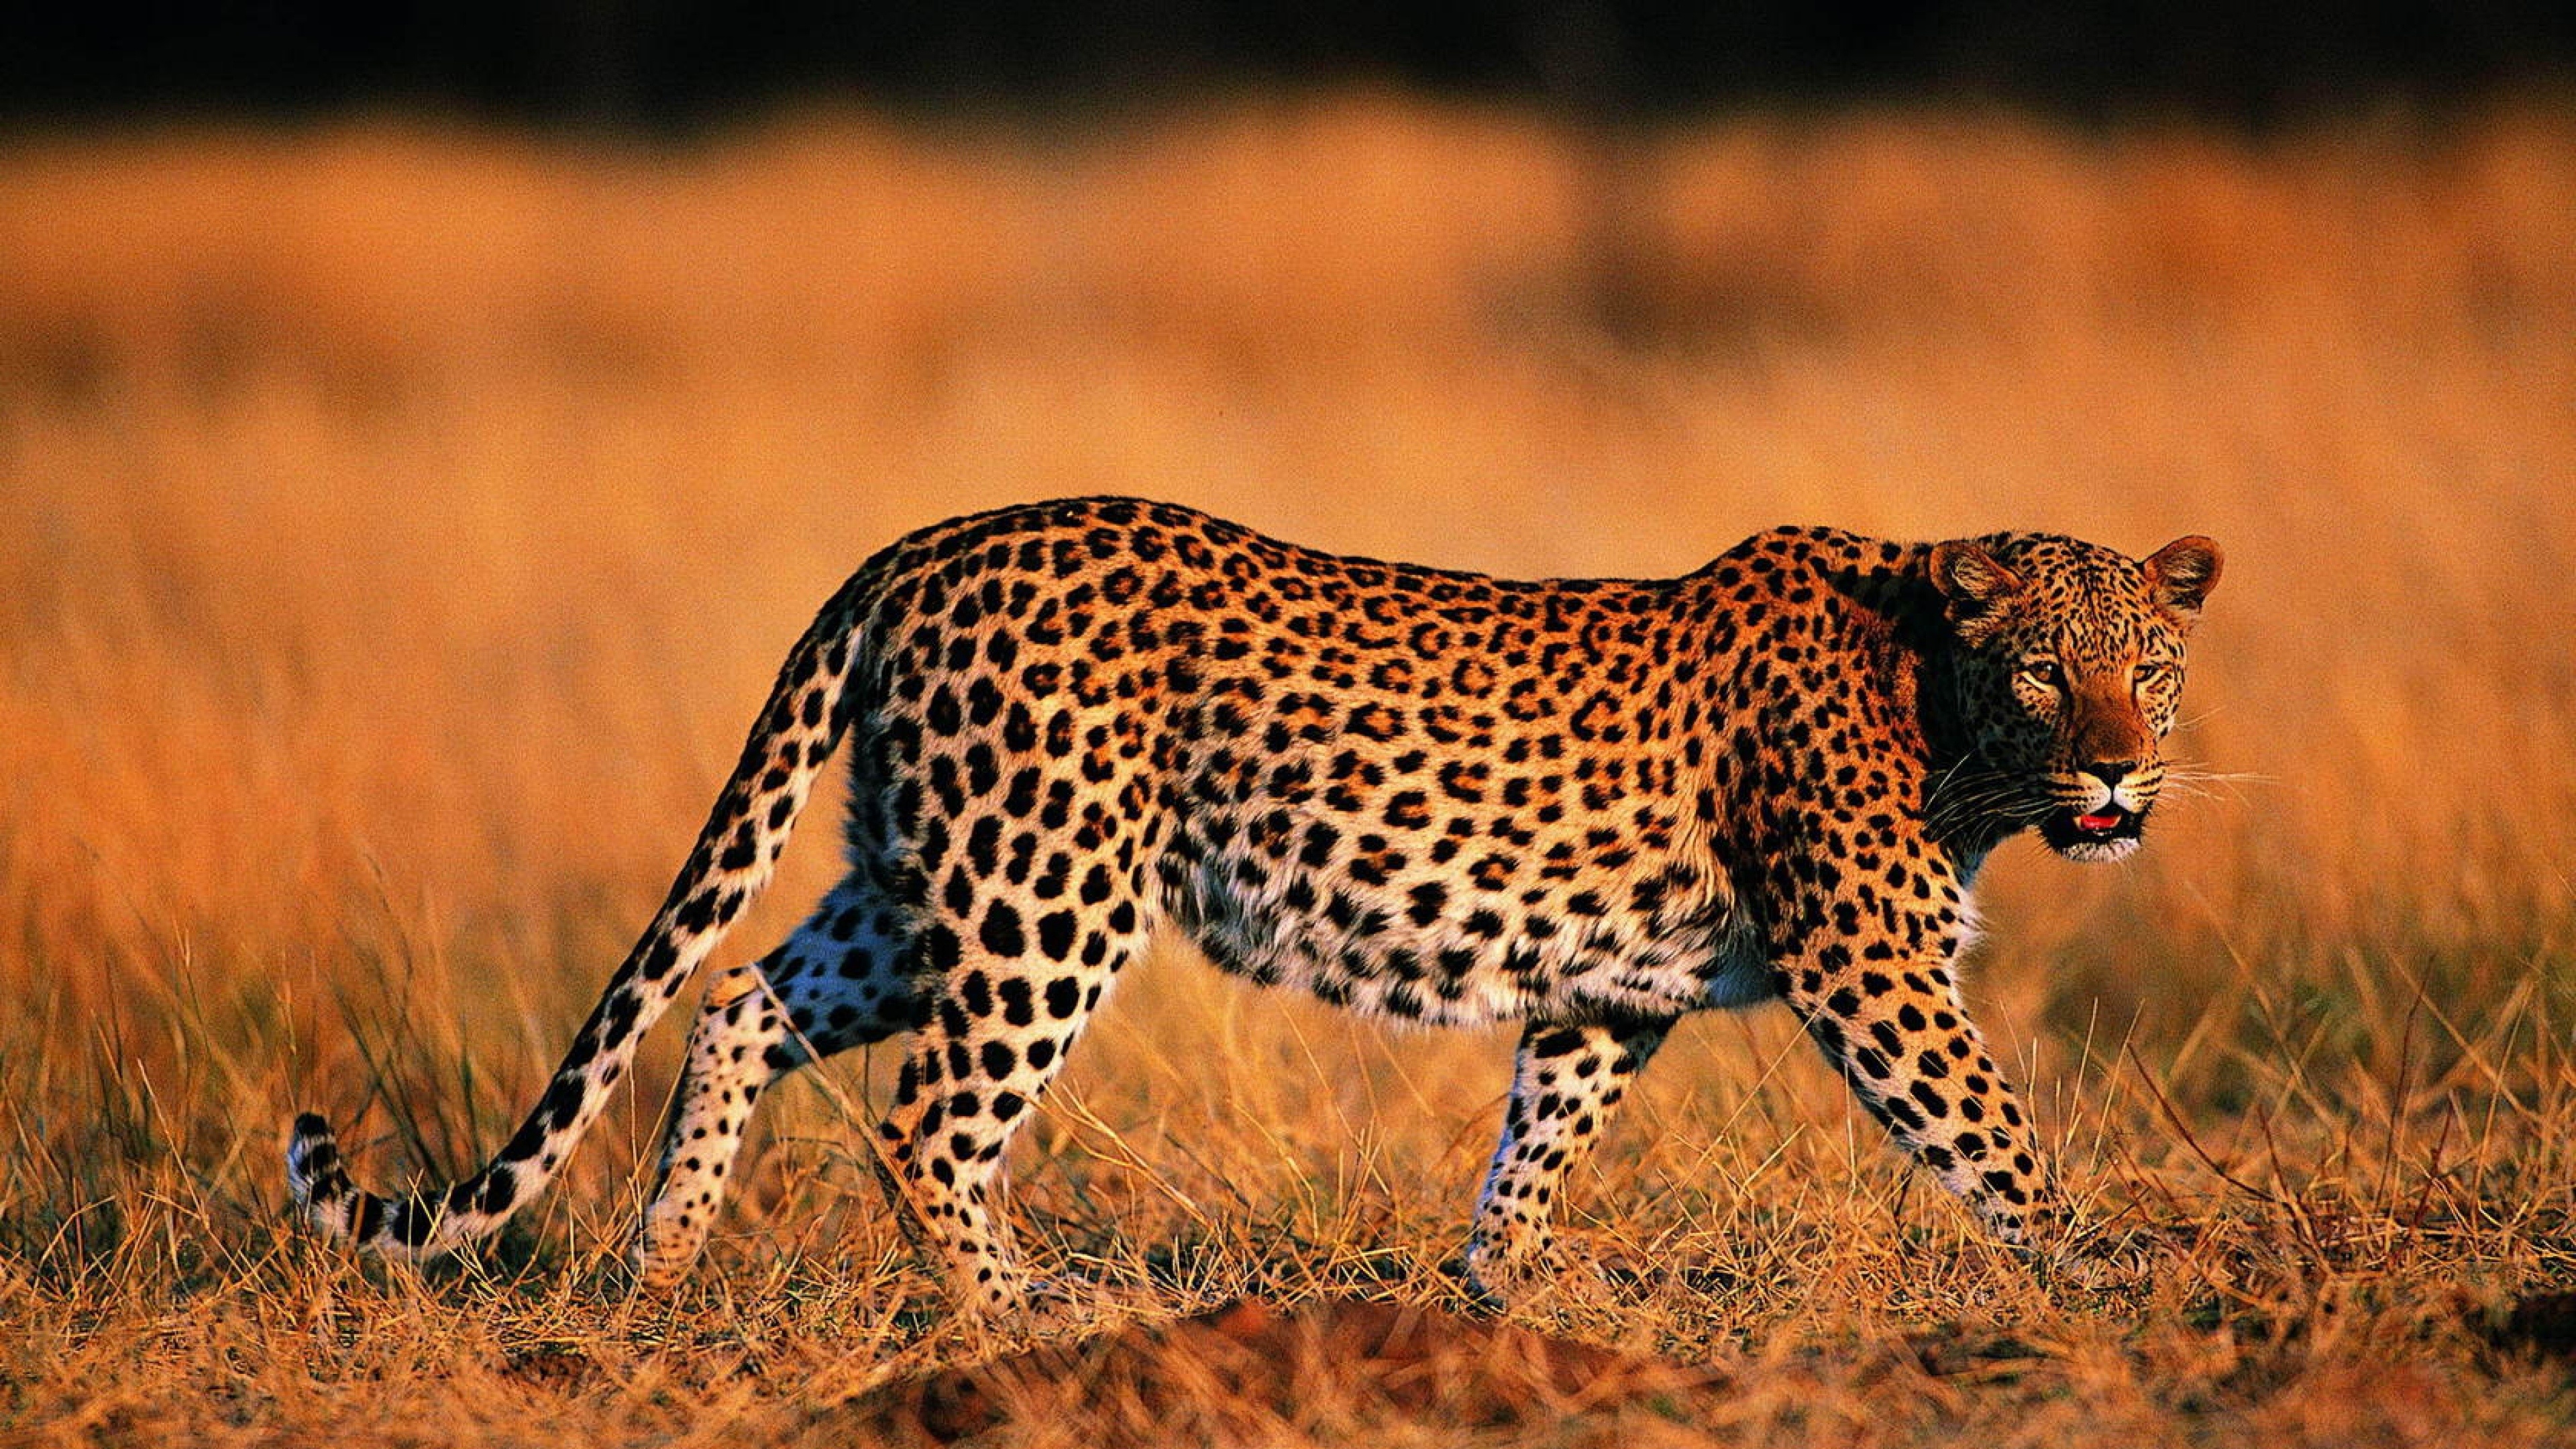 Leopard wallpaper, Beautiful leopard image, 3840x2160 4K Desktop